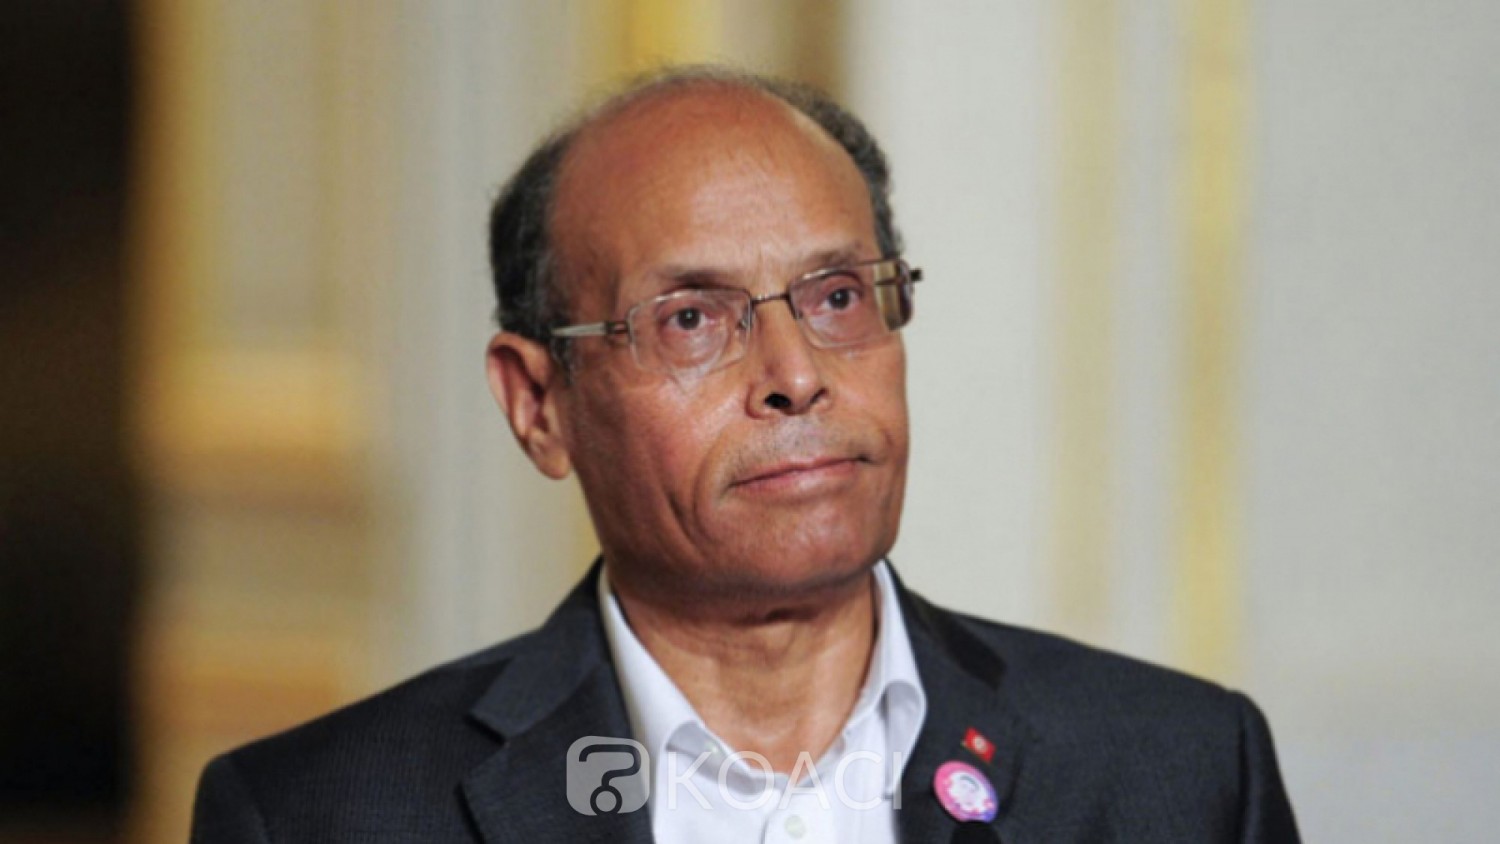 Tunisie: L'ancien Président Moncef Marzouki met fin à sa carrière politique